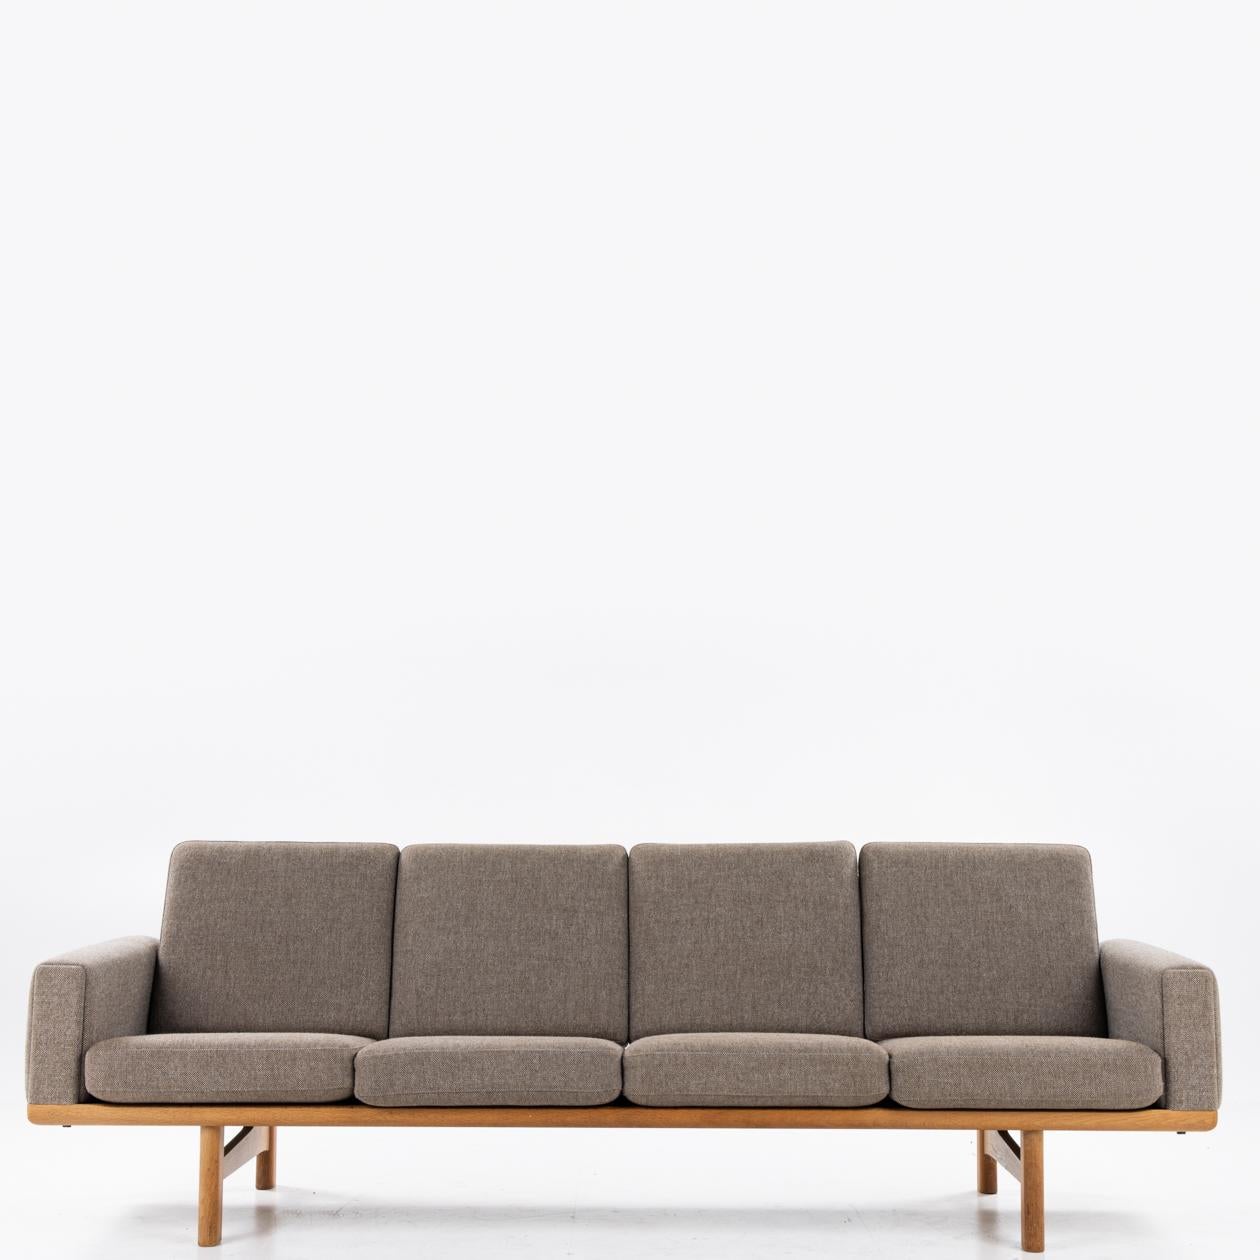 GE 236/4 - 4-seater sofa by Hans J. Wegner / Getama In Good Condition In Copenhagen, DK